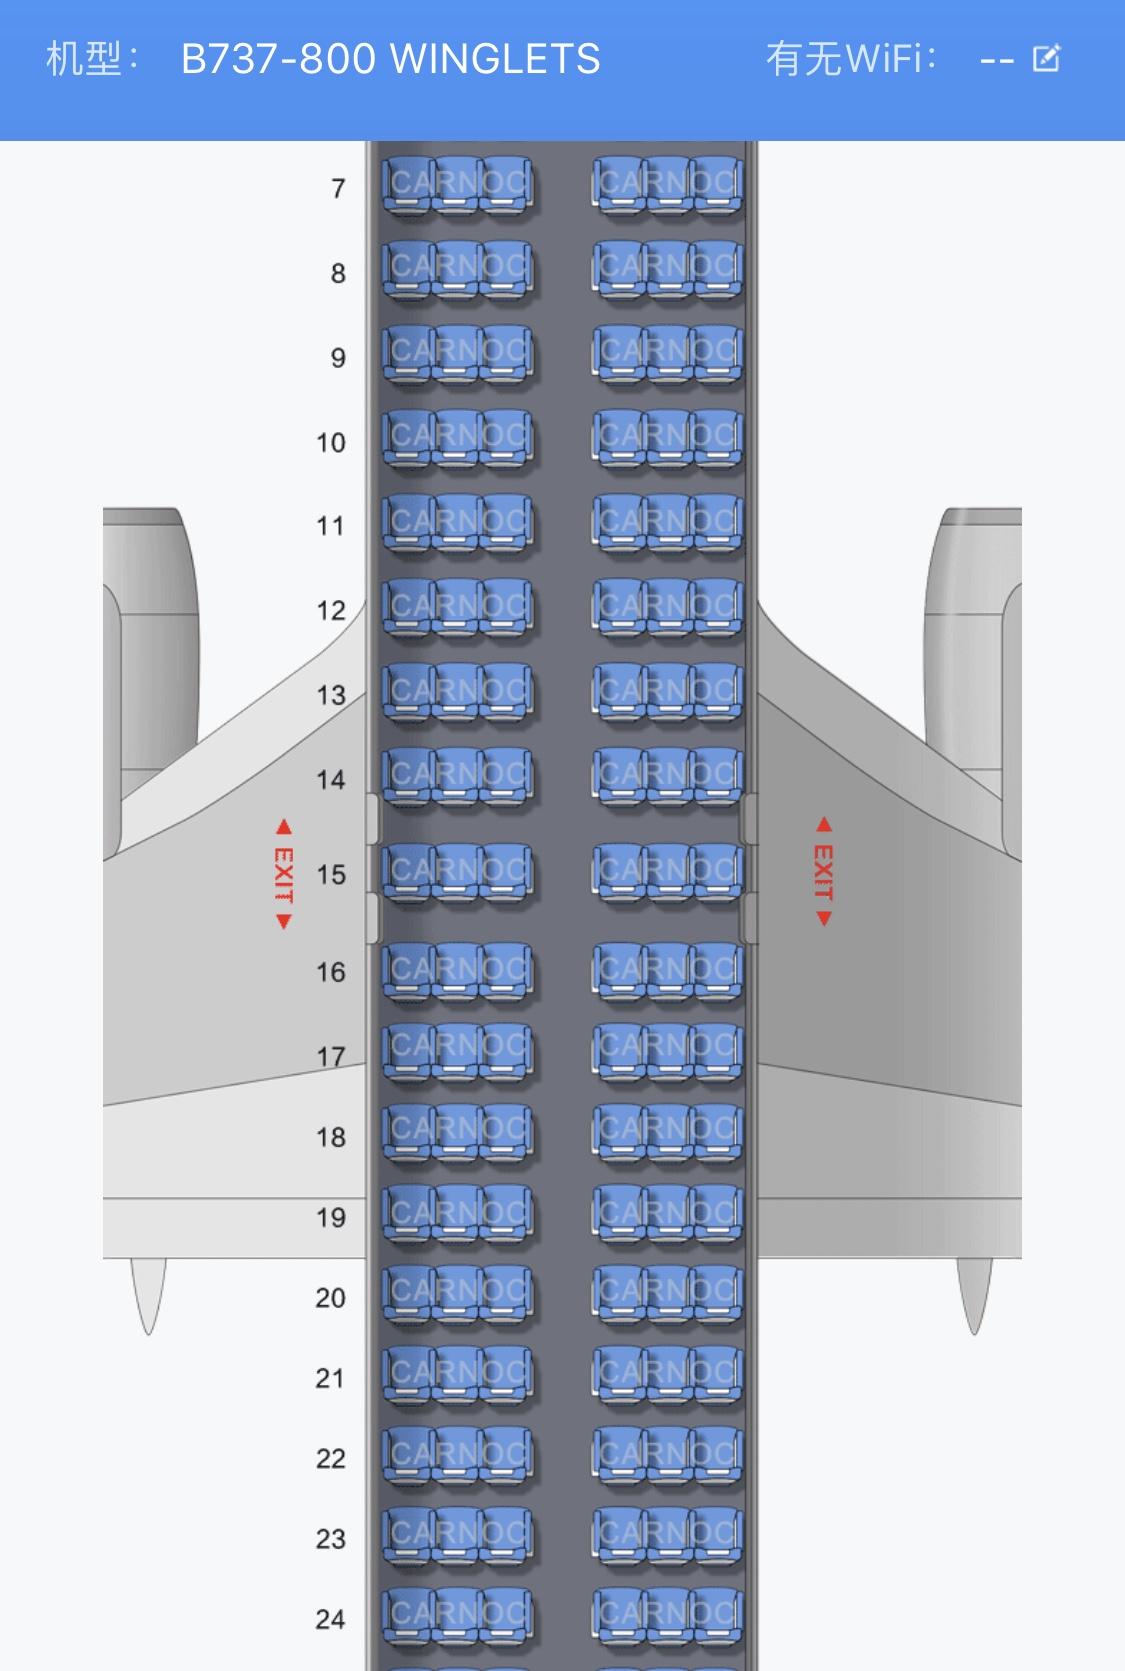 厦门航空波音737座位图图片